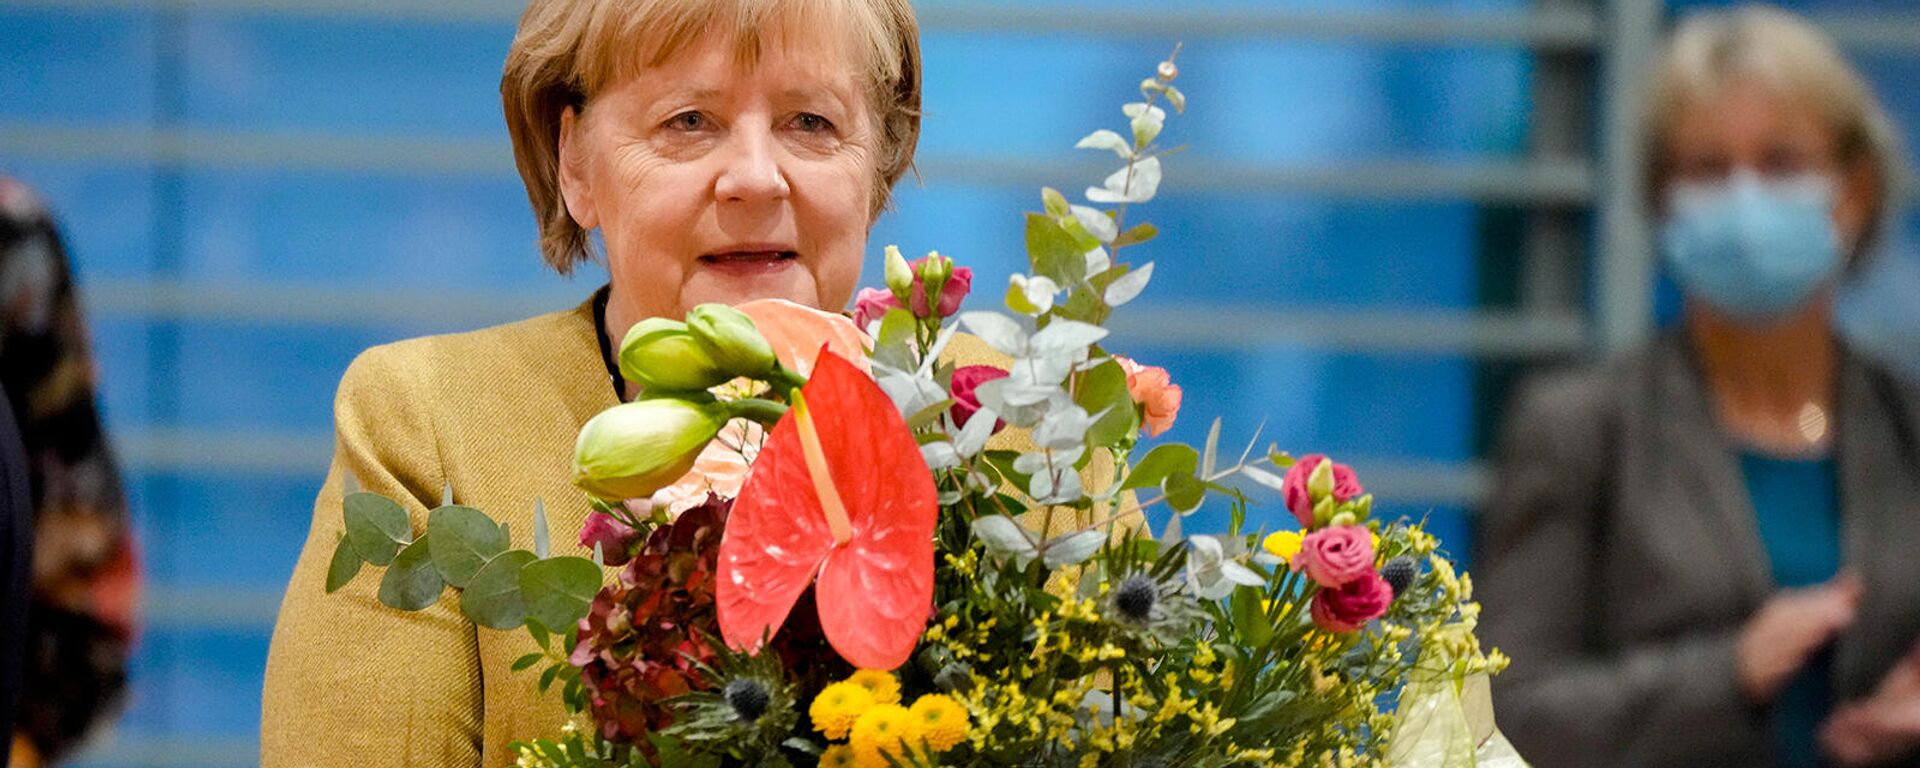 Вице-канцлер Германии и министр финансов Олаф Шольц дарит букет канцлеру Ангеле Меркель перед заседанием кабинета министров (24 ноября 2021). Берлин - Sputnik Армения, 1920, 10.12.2021